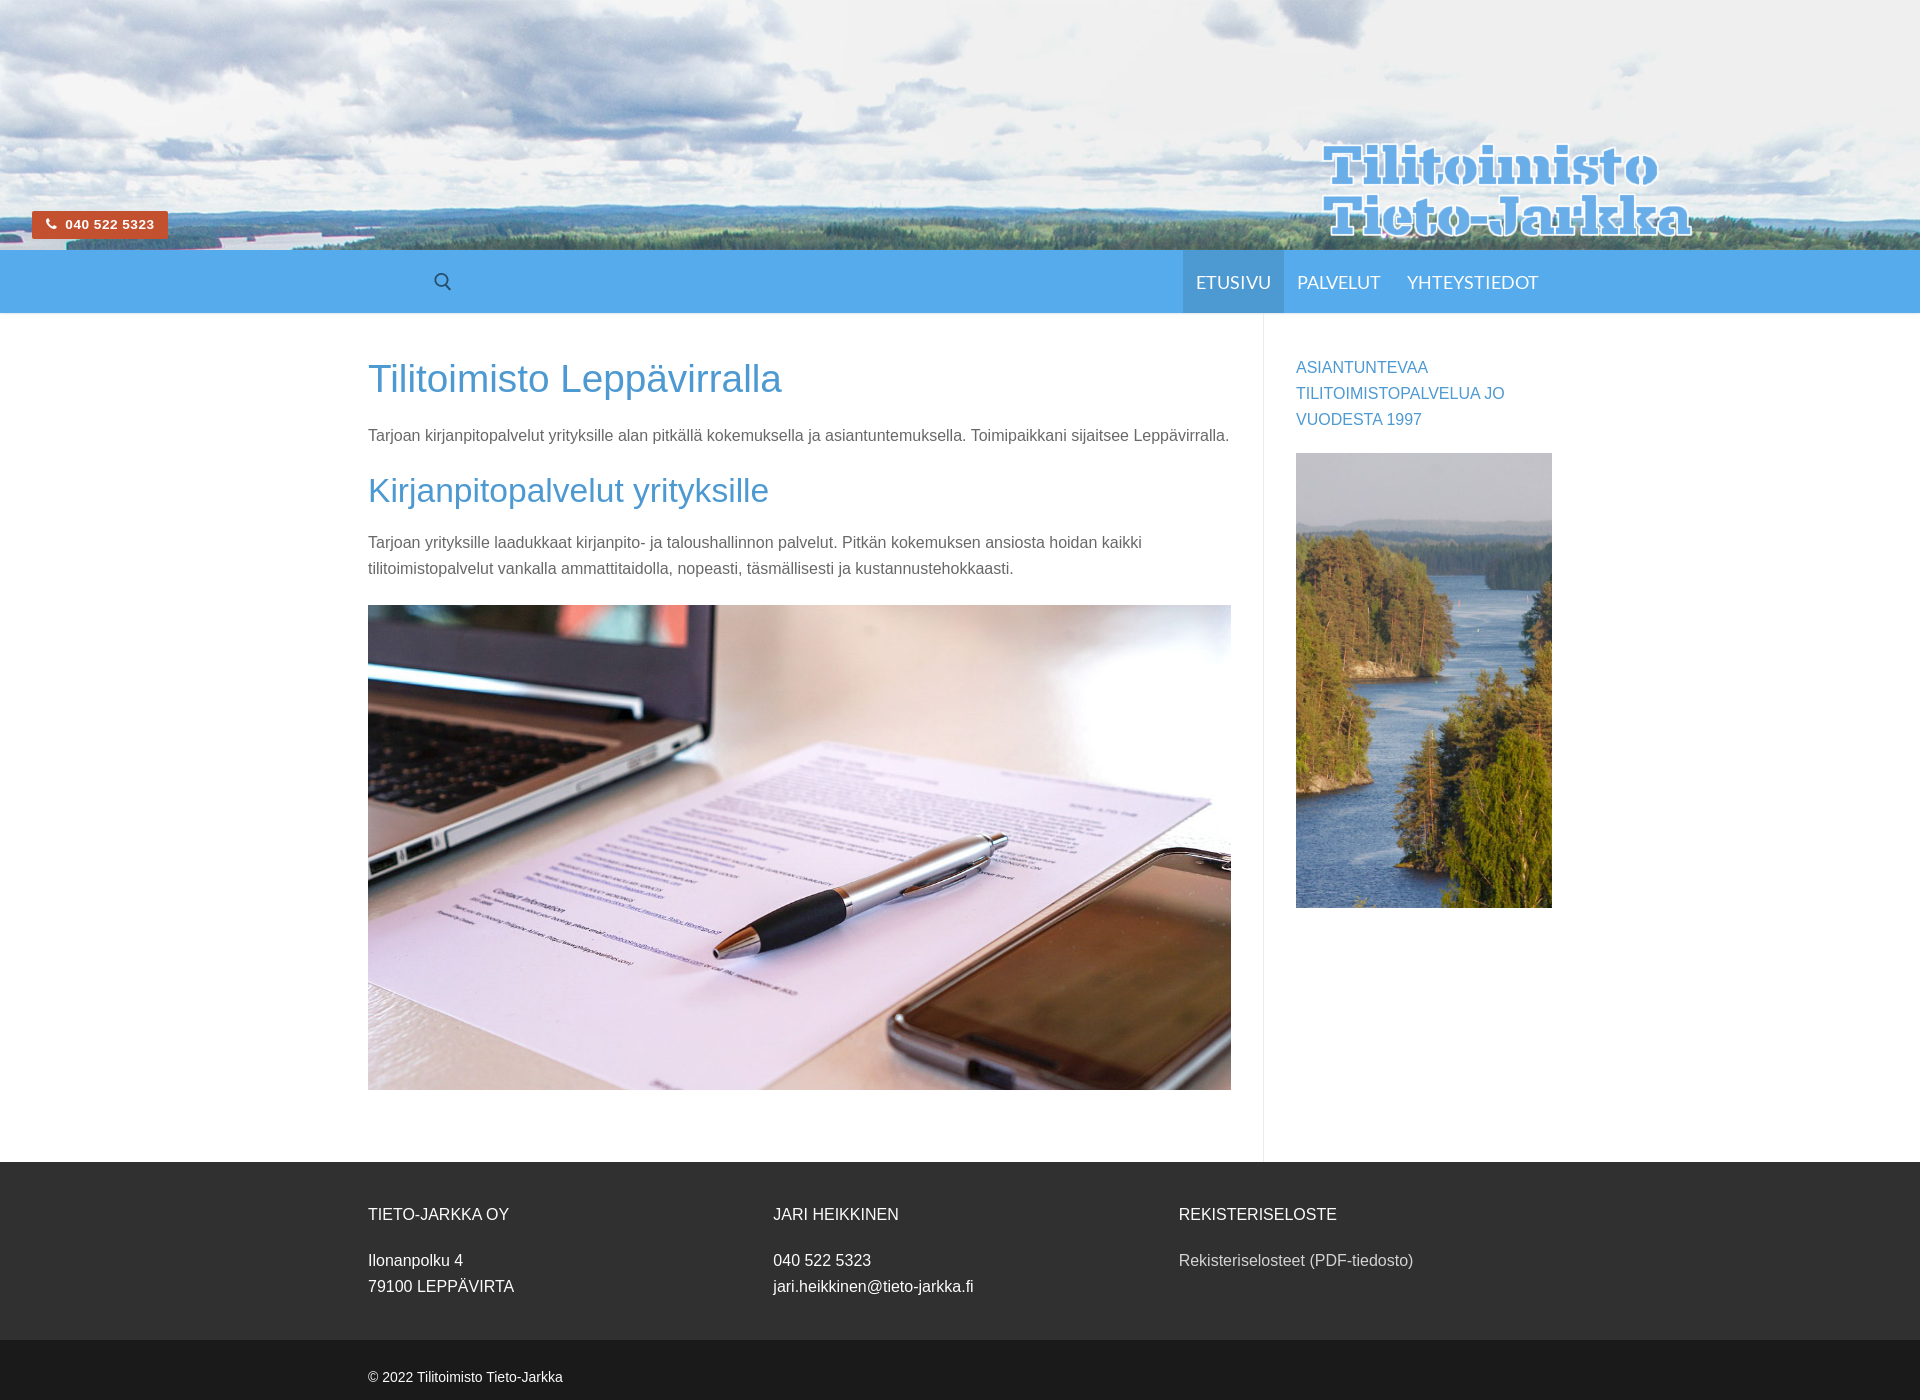 Näyttökuva tieto-jarkka.fi